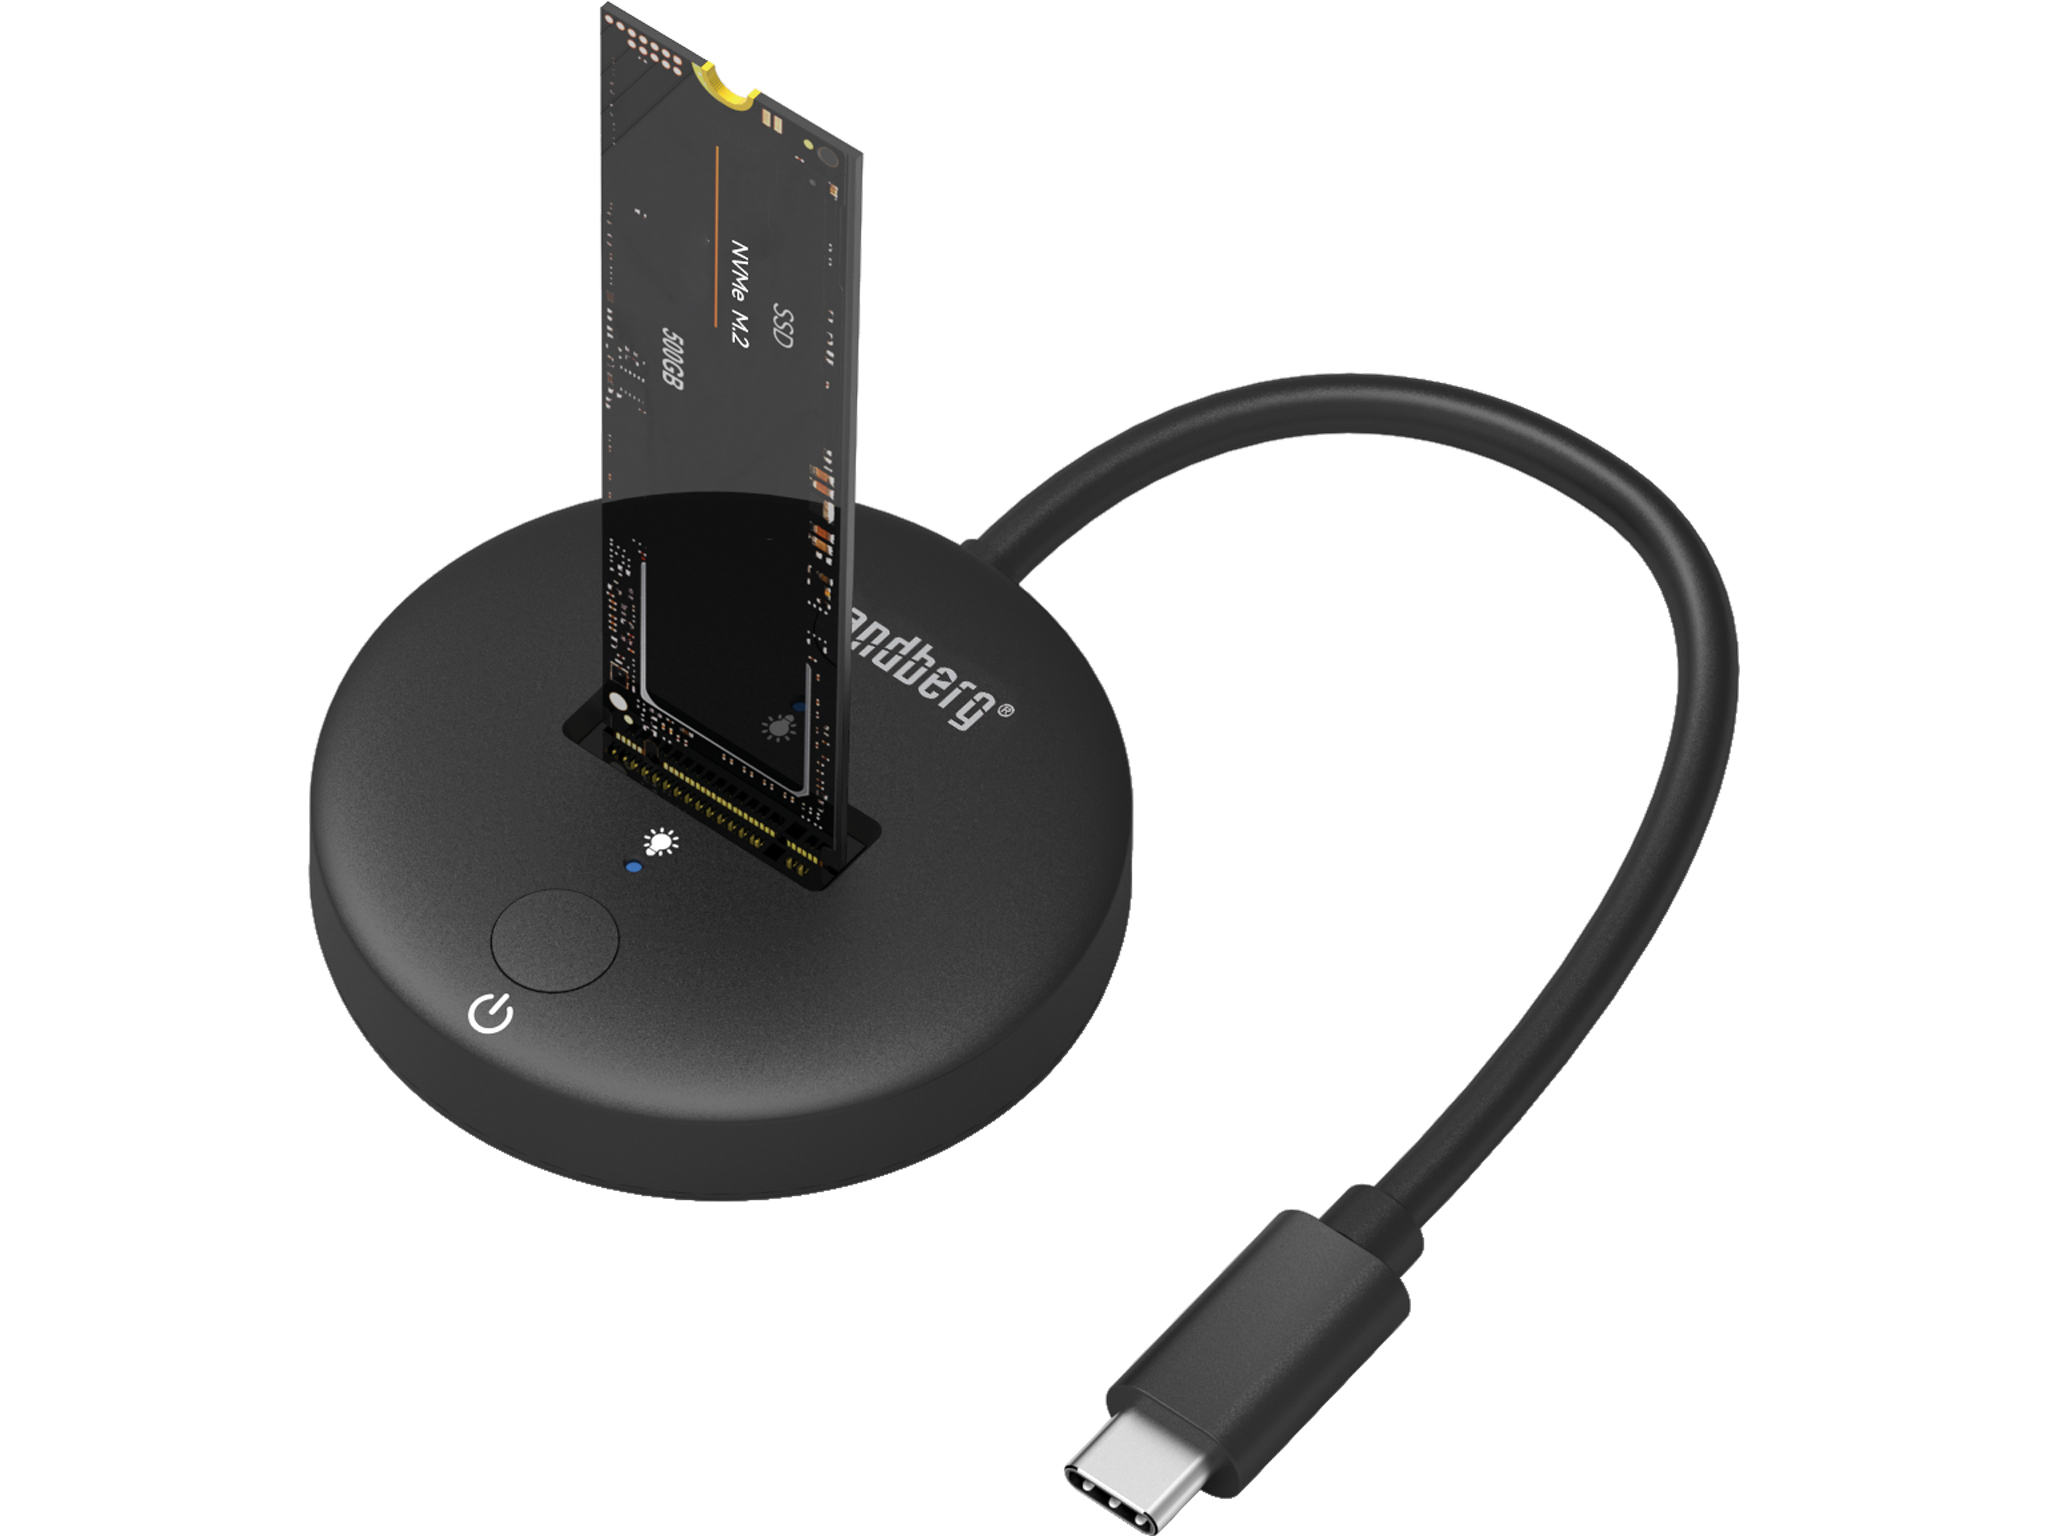 Das Sandberg USB 3.2 Dock ermöglicht einen einfachen externen Anschluss von M.2- und NVMe-SSD-Laufwerken in verschiedenen Größen. (c) Sandberg